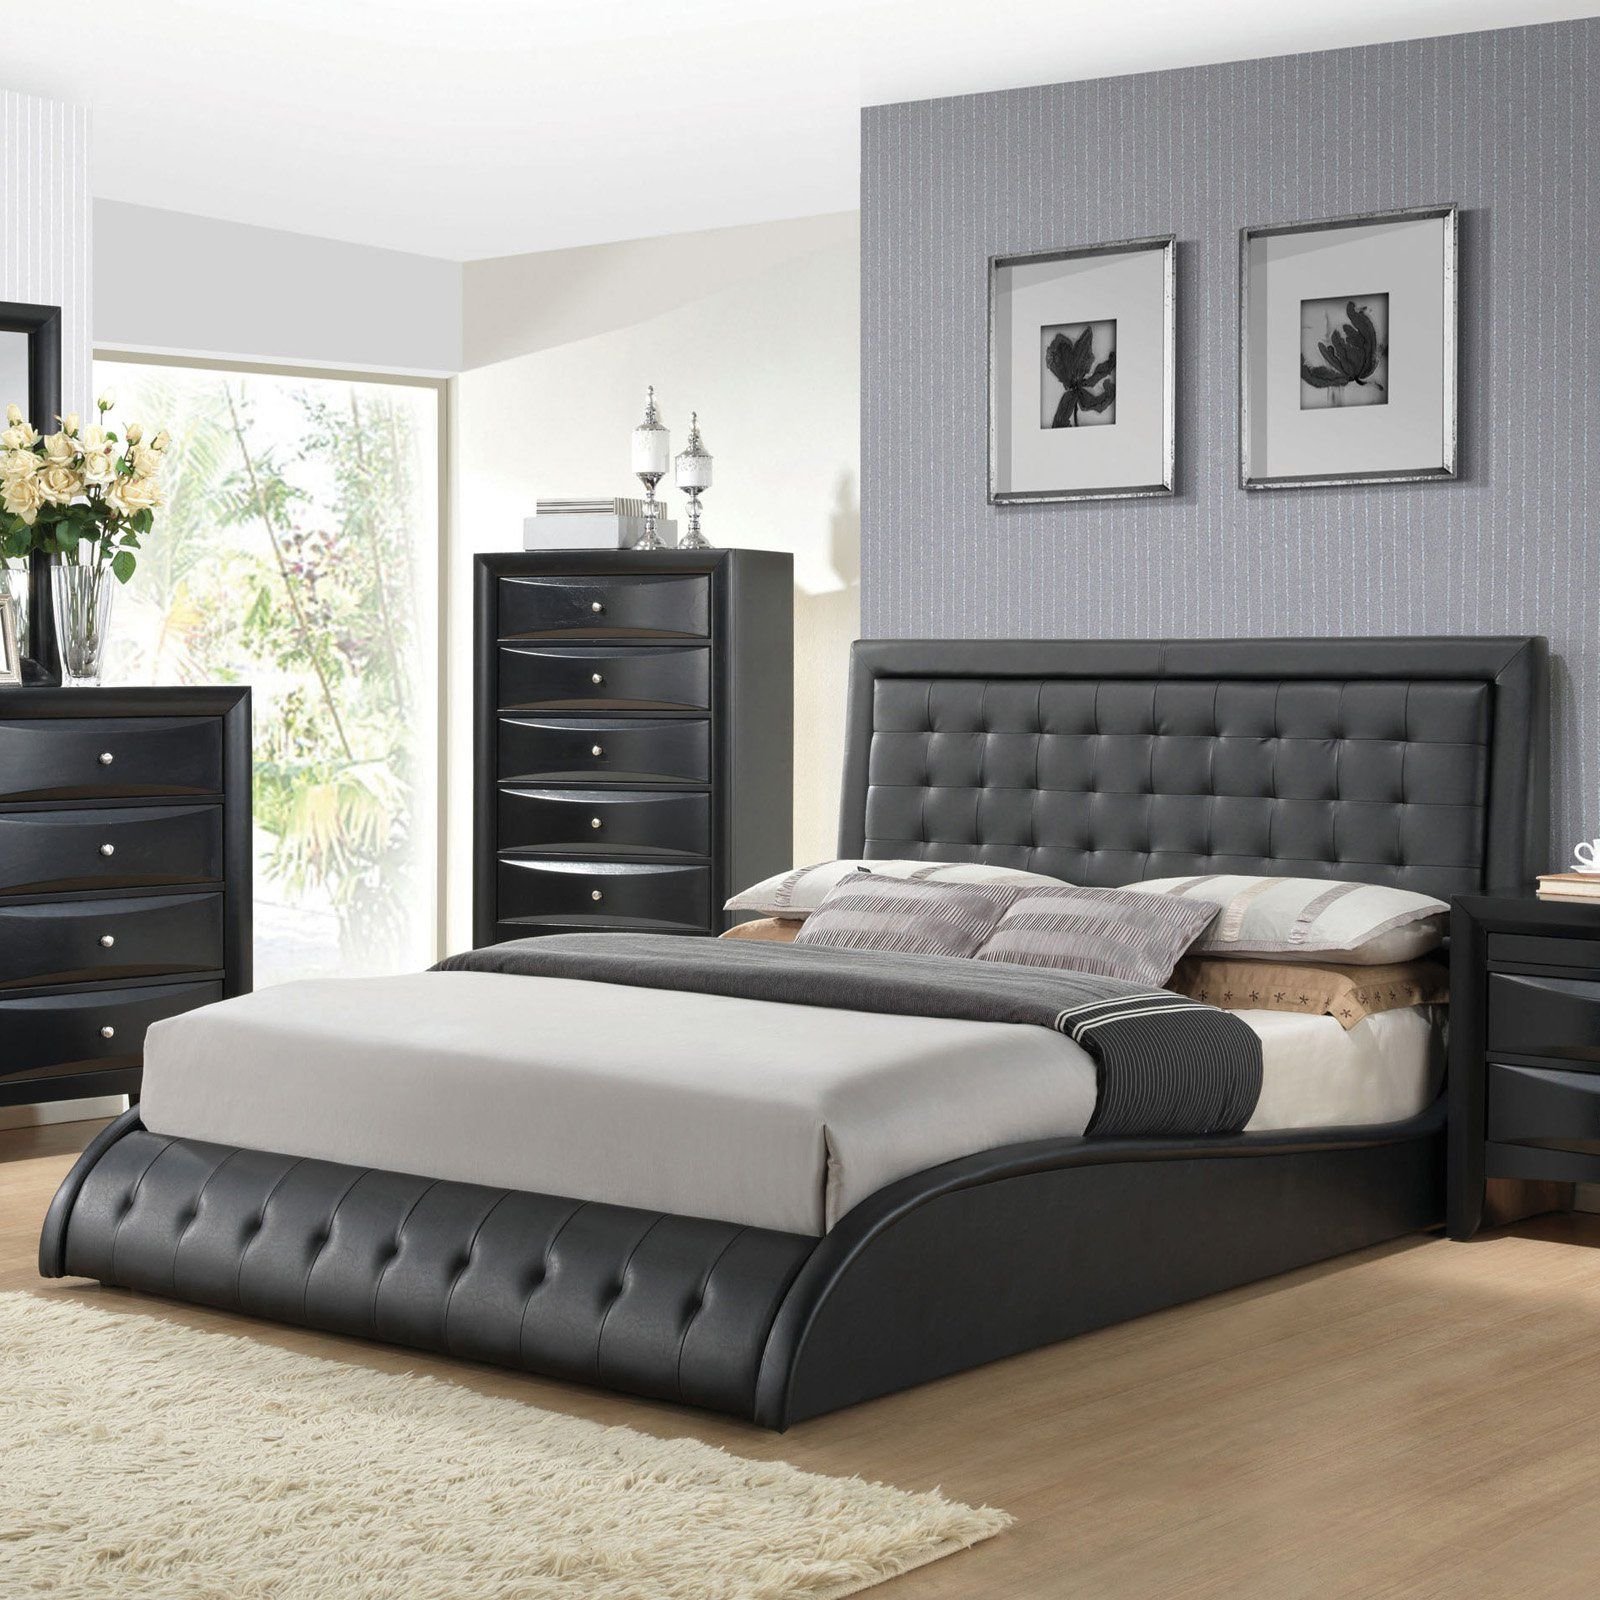 Рейтинг качества кроватей. Гарнитур Кинг сайз спальный черный цвет. Красивая кровать двуспальная. Кровати в спальню двуспальные. Черная кровать.